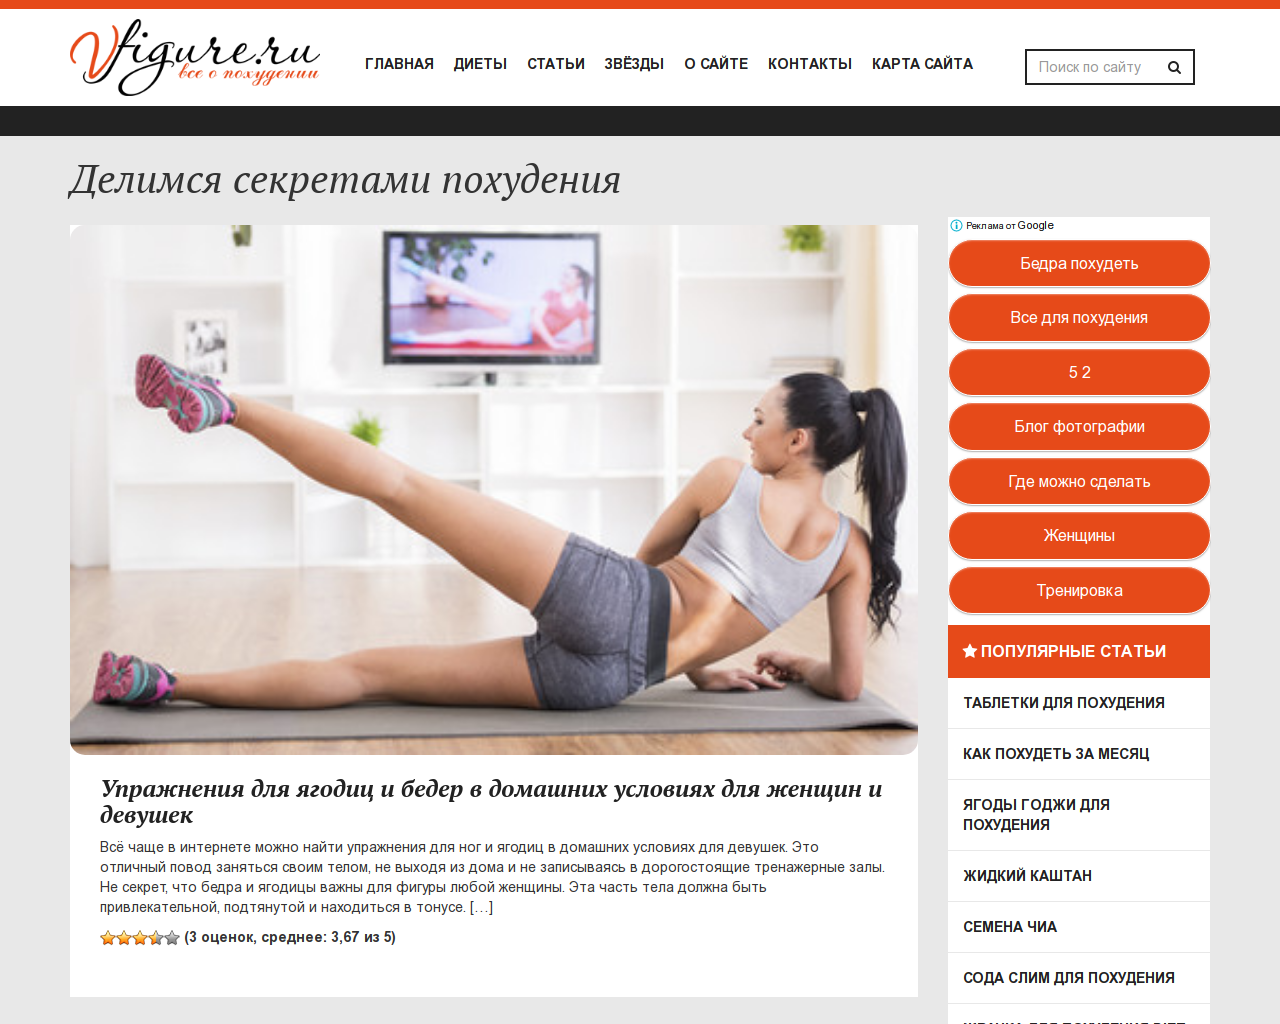 Изображение сайта vfigure.ru в разрешении 1280x1024